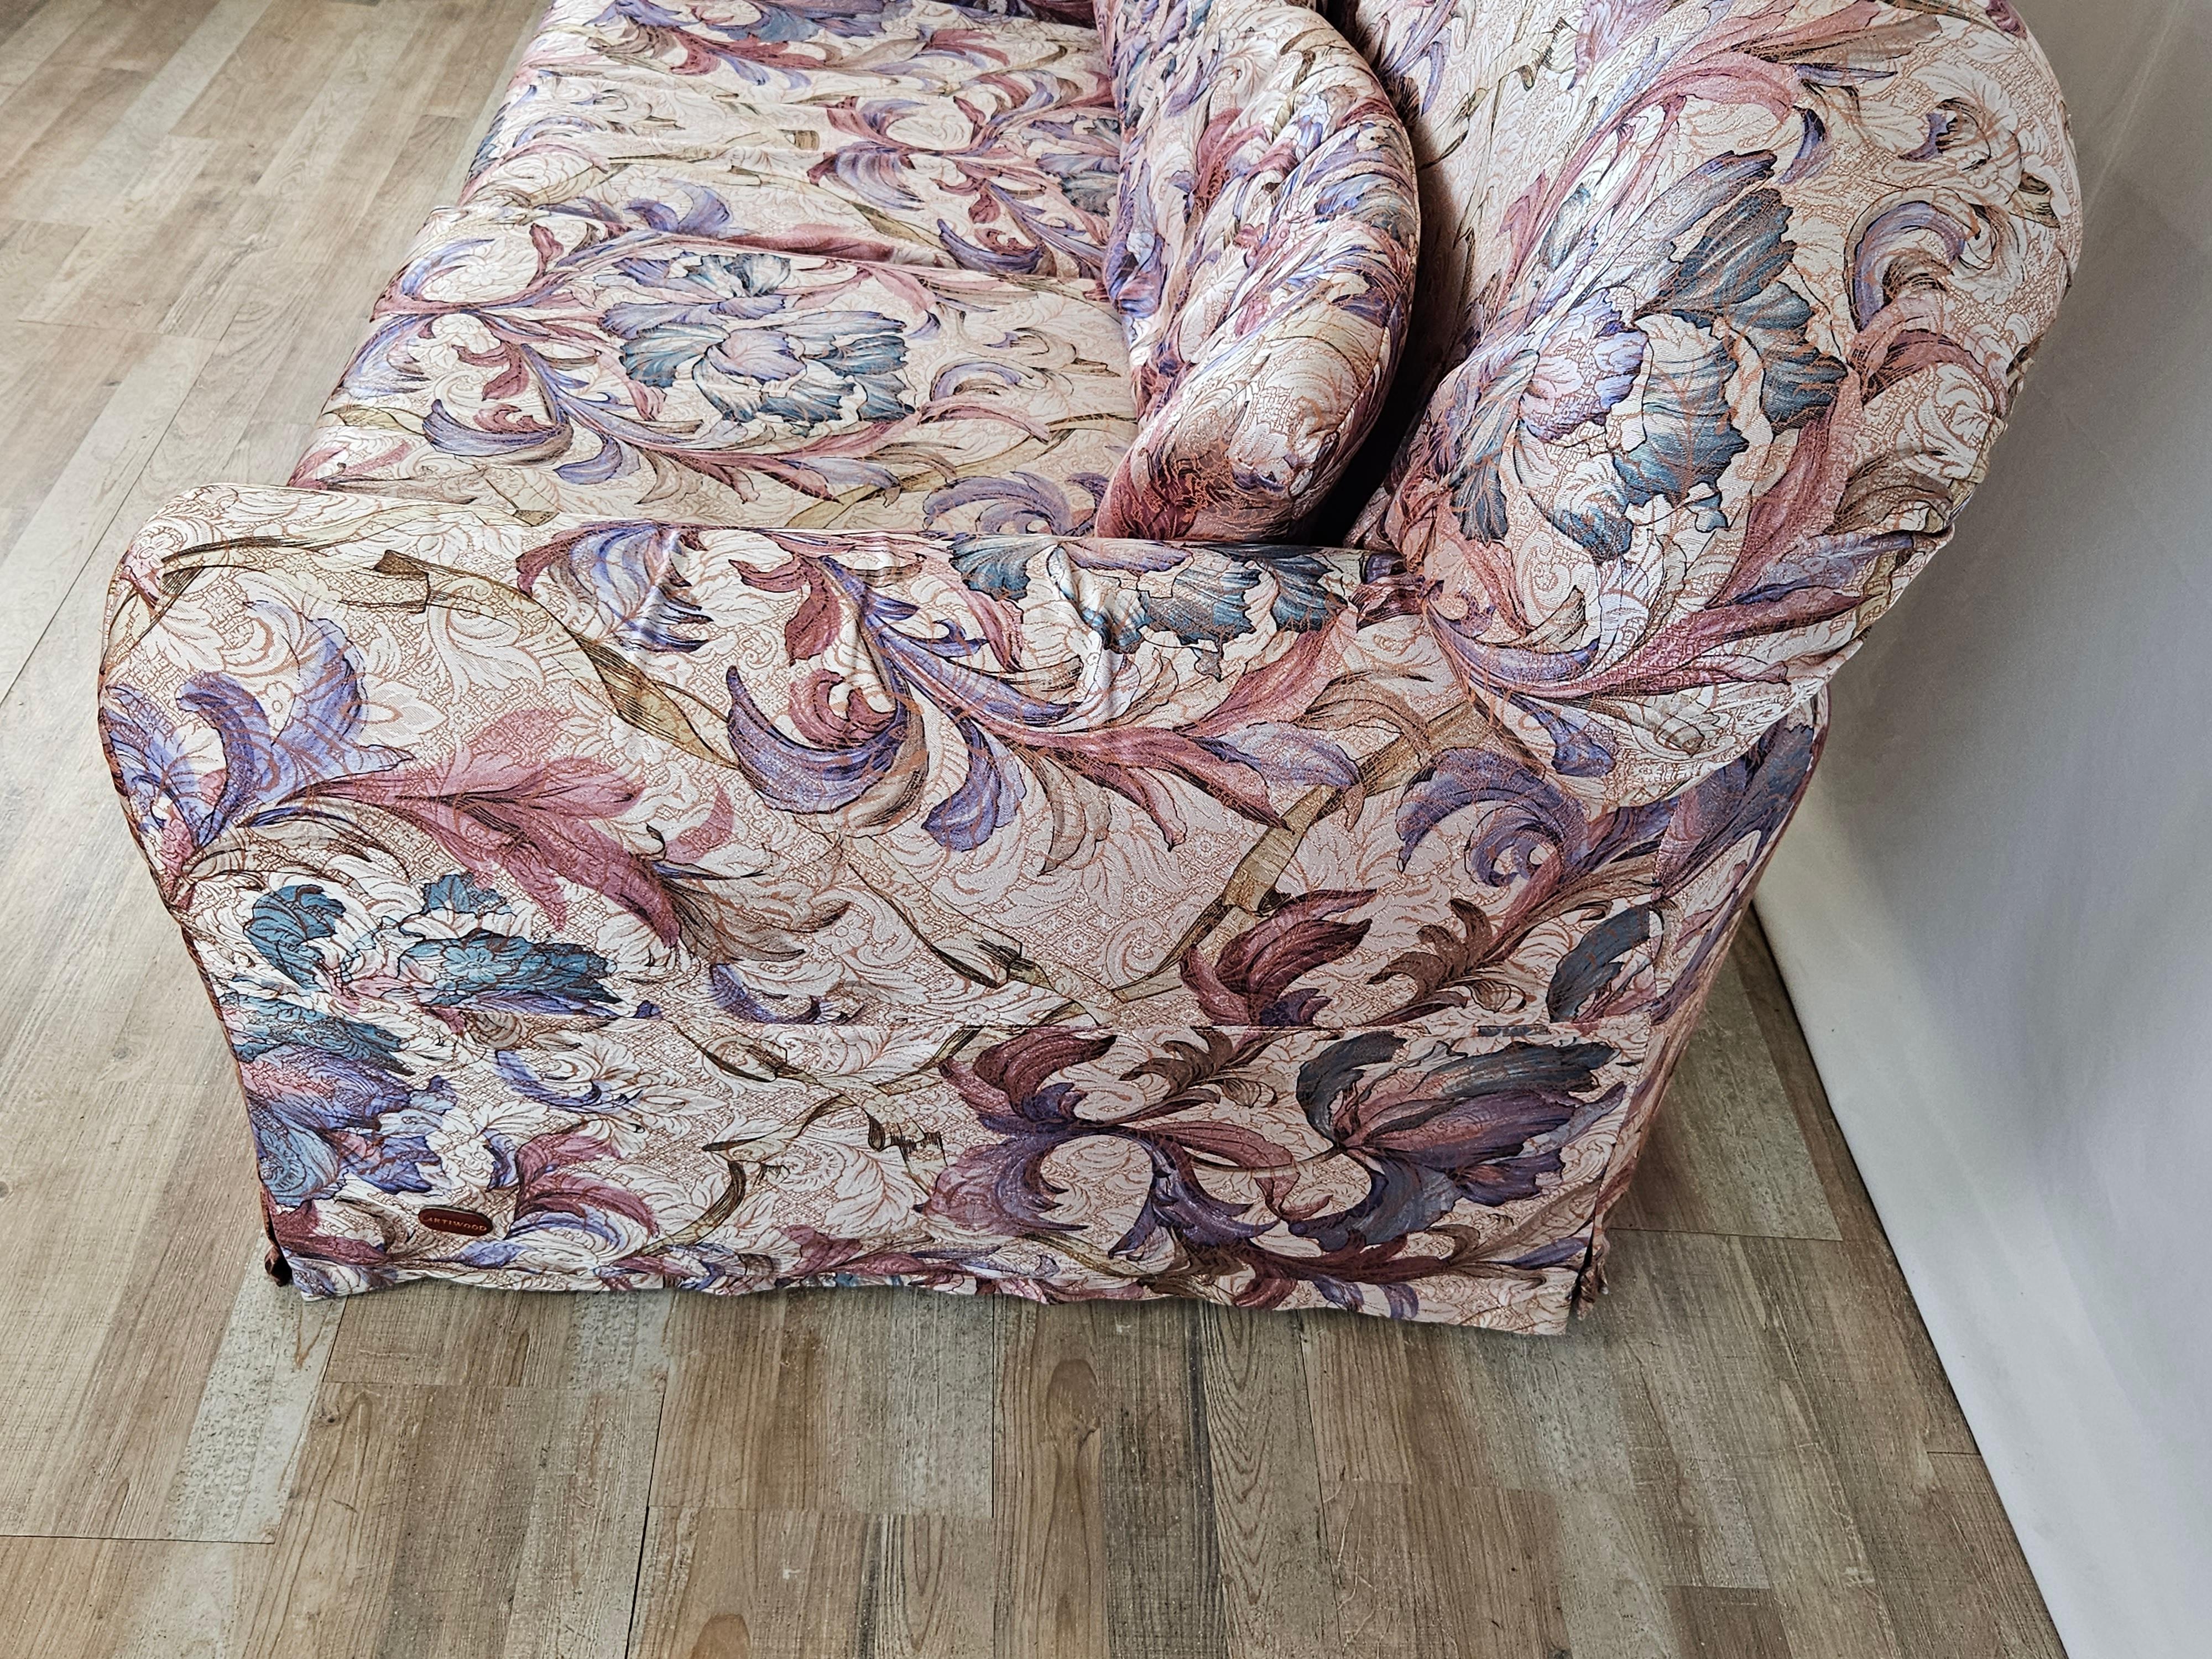 Modernes und lebhaftes Zweisitzer-Sofa aus den 1970er Jahren, bezogen mit einem sehr auffälligen, floralen Stoff.

Das Sofa ist in einem sehr guten Zustand und bringt frischen und fröhlichen Schwung in moderne und Vintage-Umgebungen.

Perfekt für